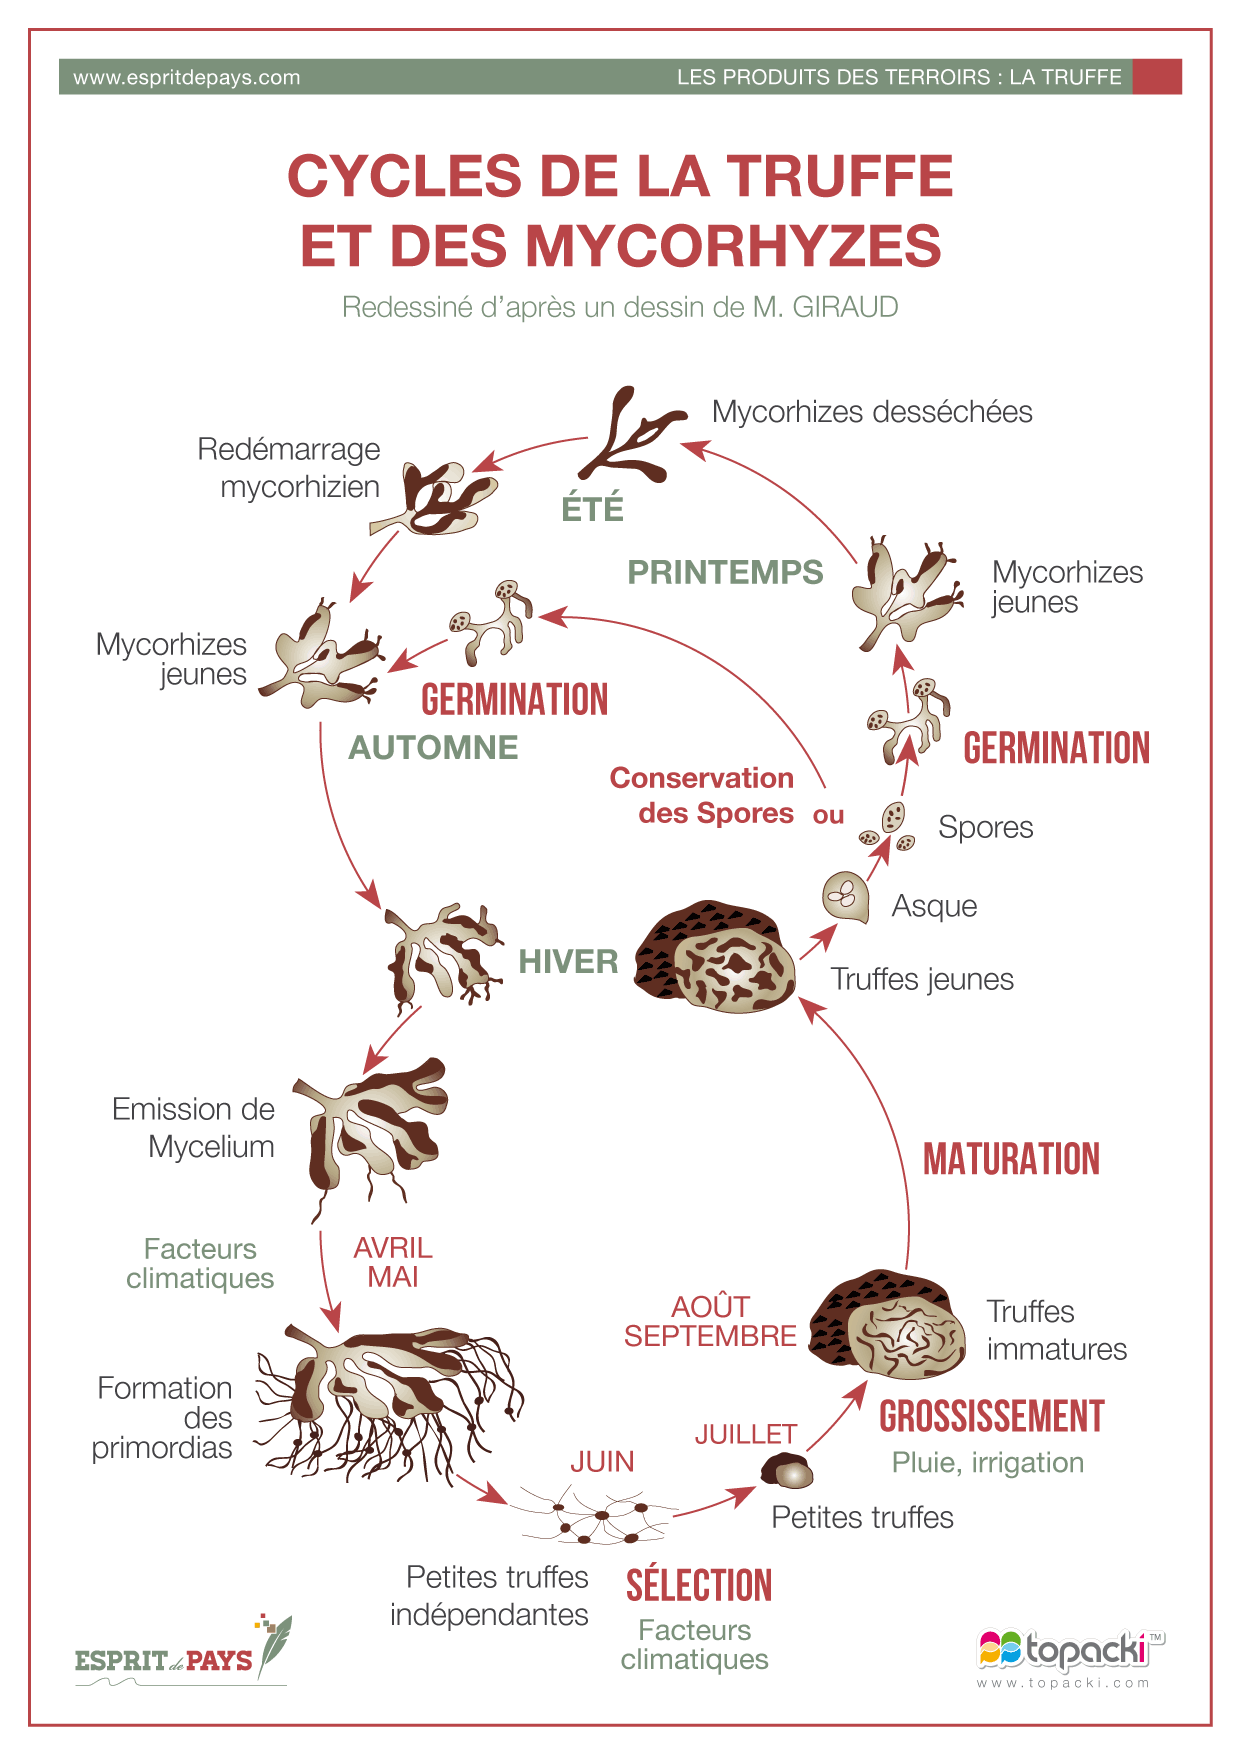 Croquis : Cycle de la truffe et des mycorhyzes